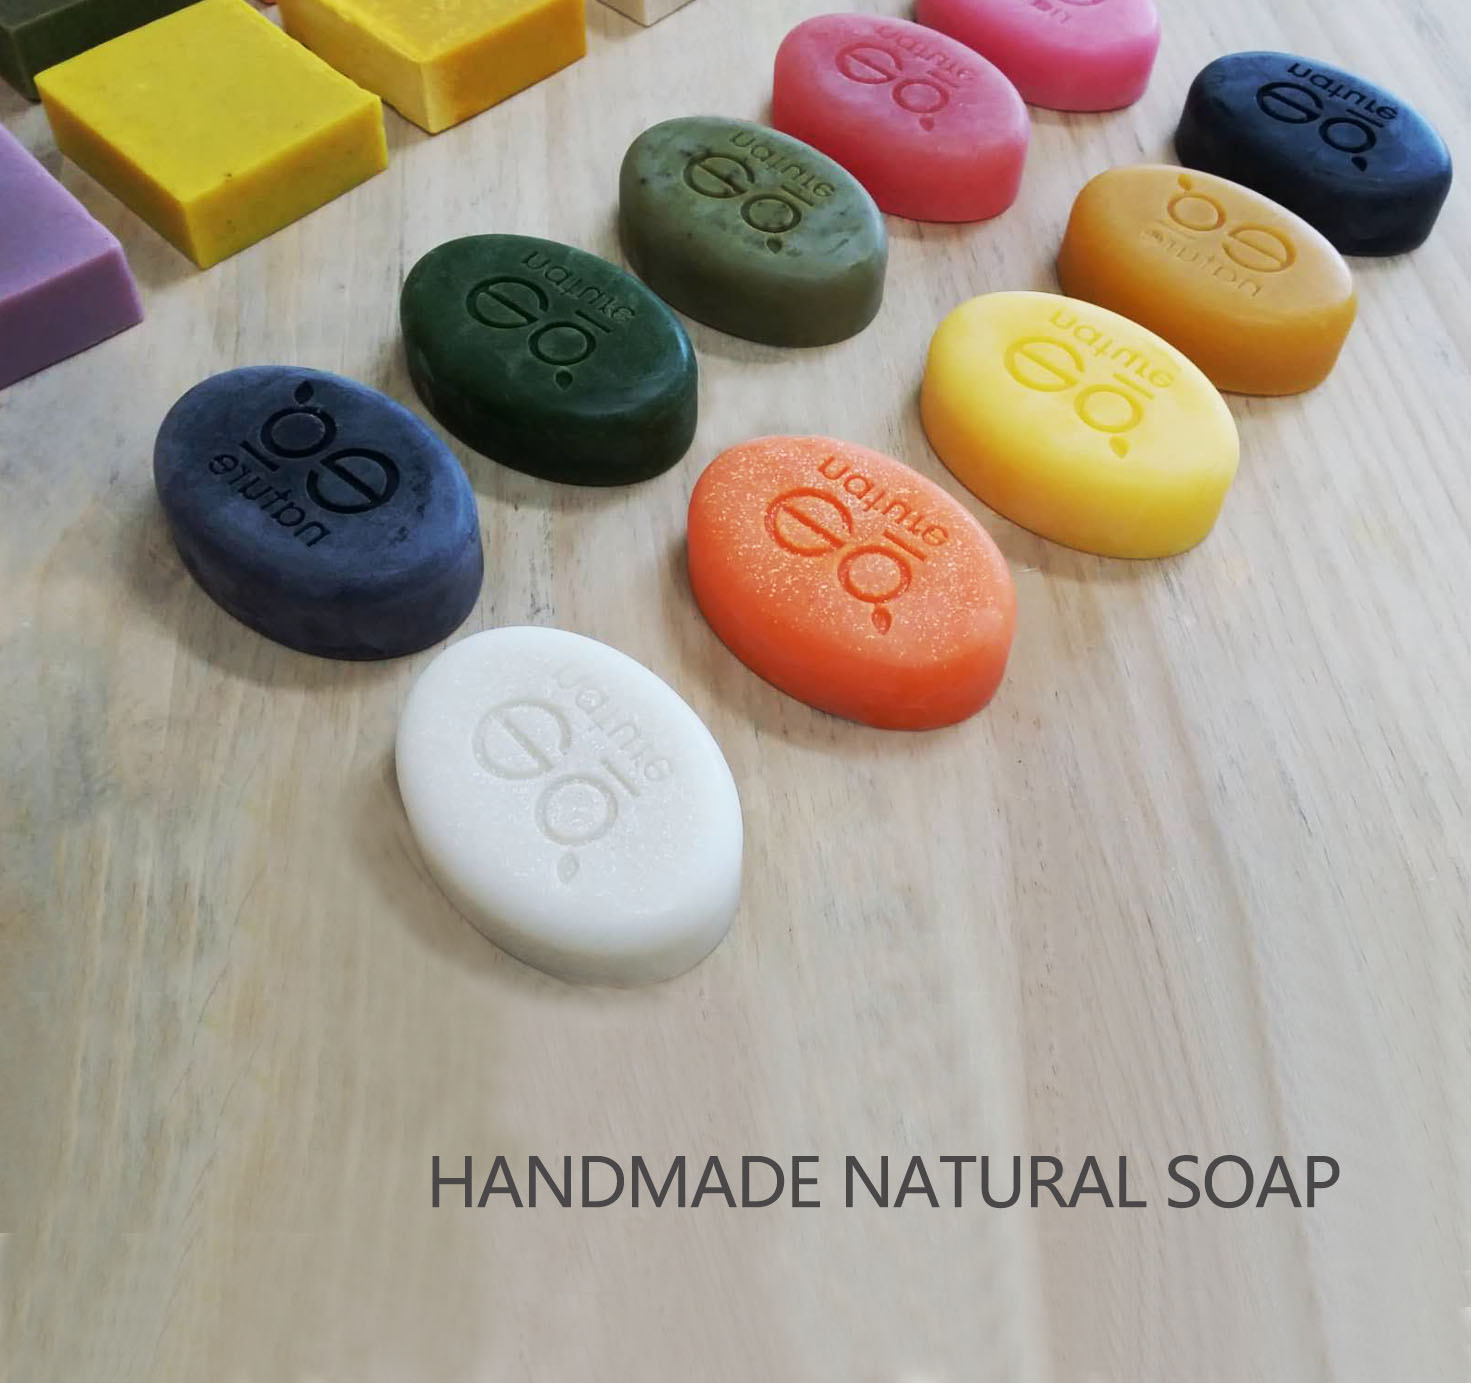 HANDMADE NATURAL SOAP